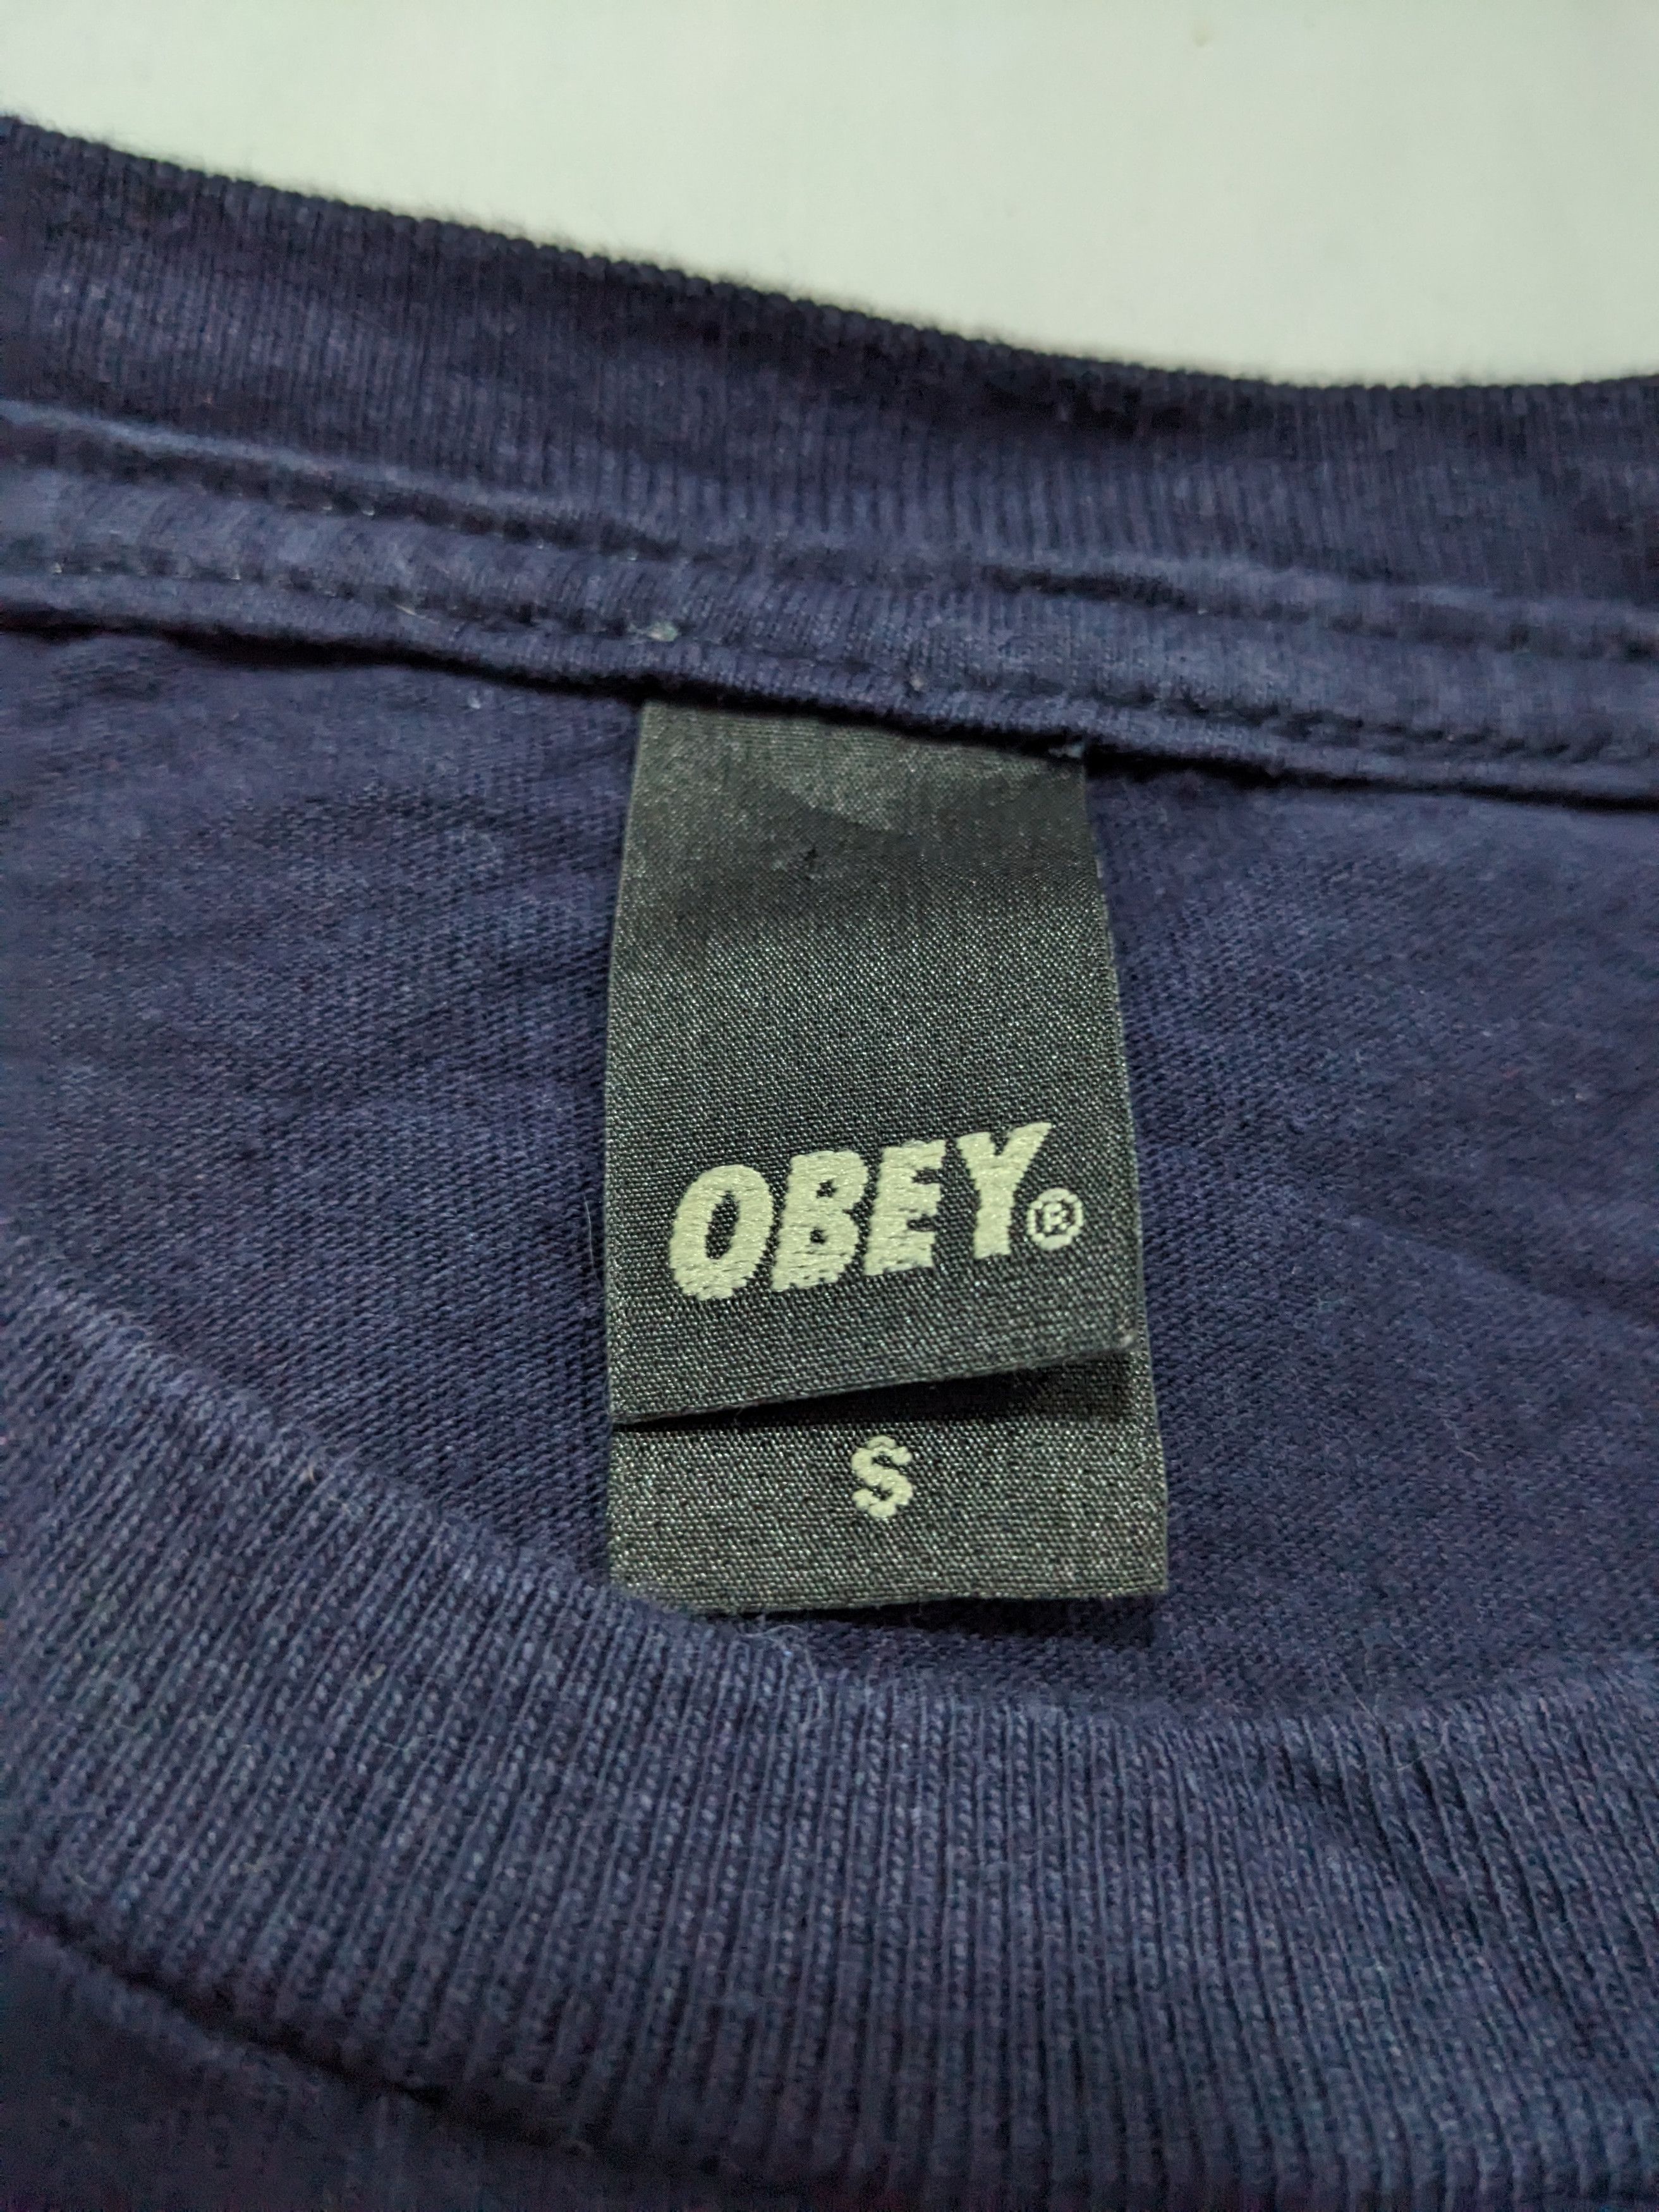 Barrack Obama Obey Tshirt Y2K Style Streetwear - 5